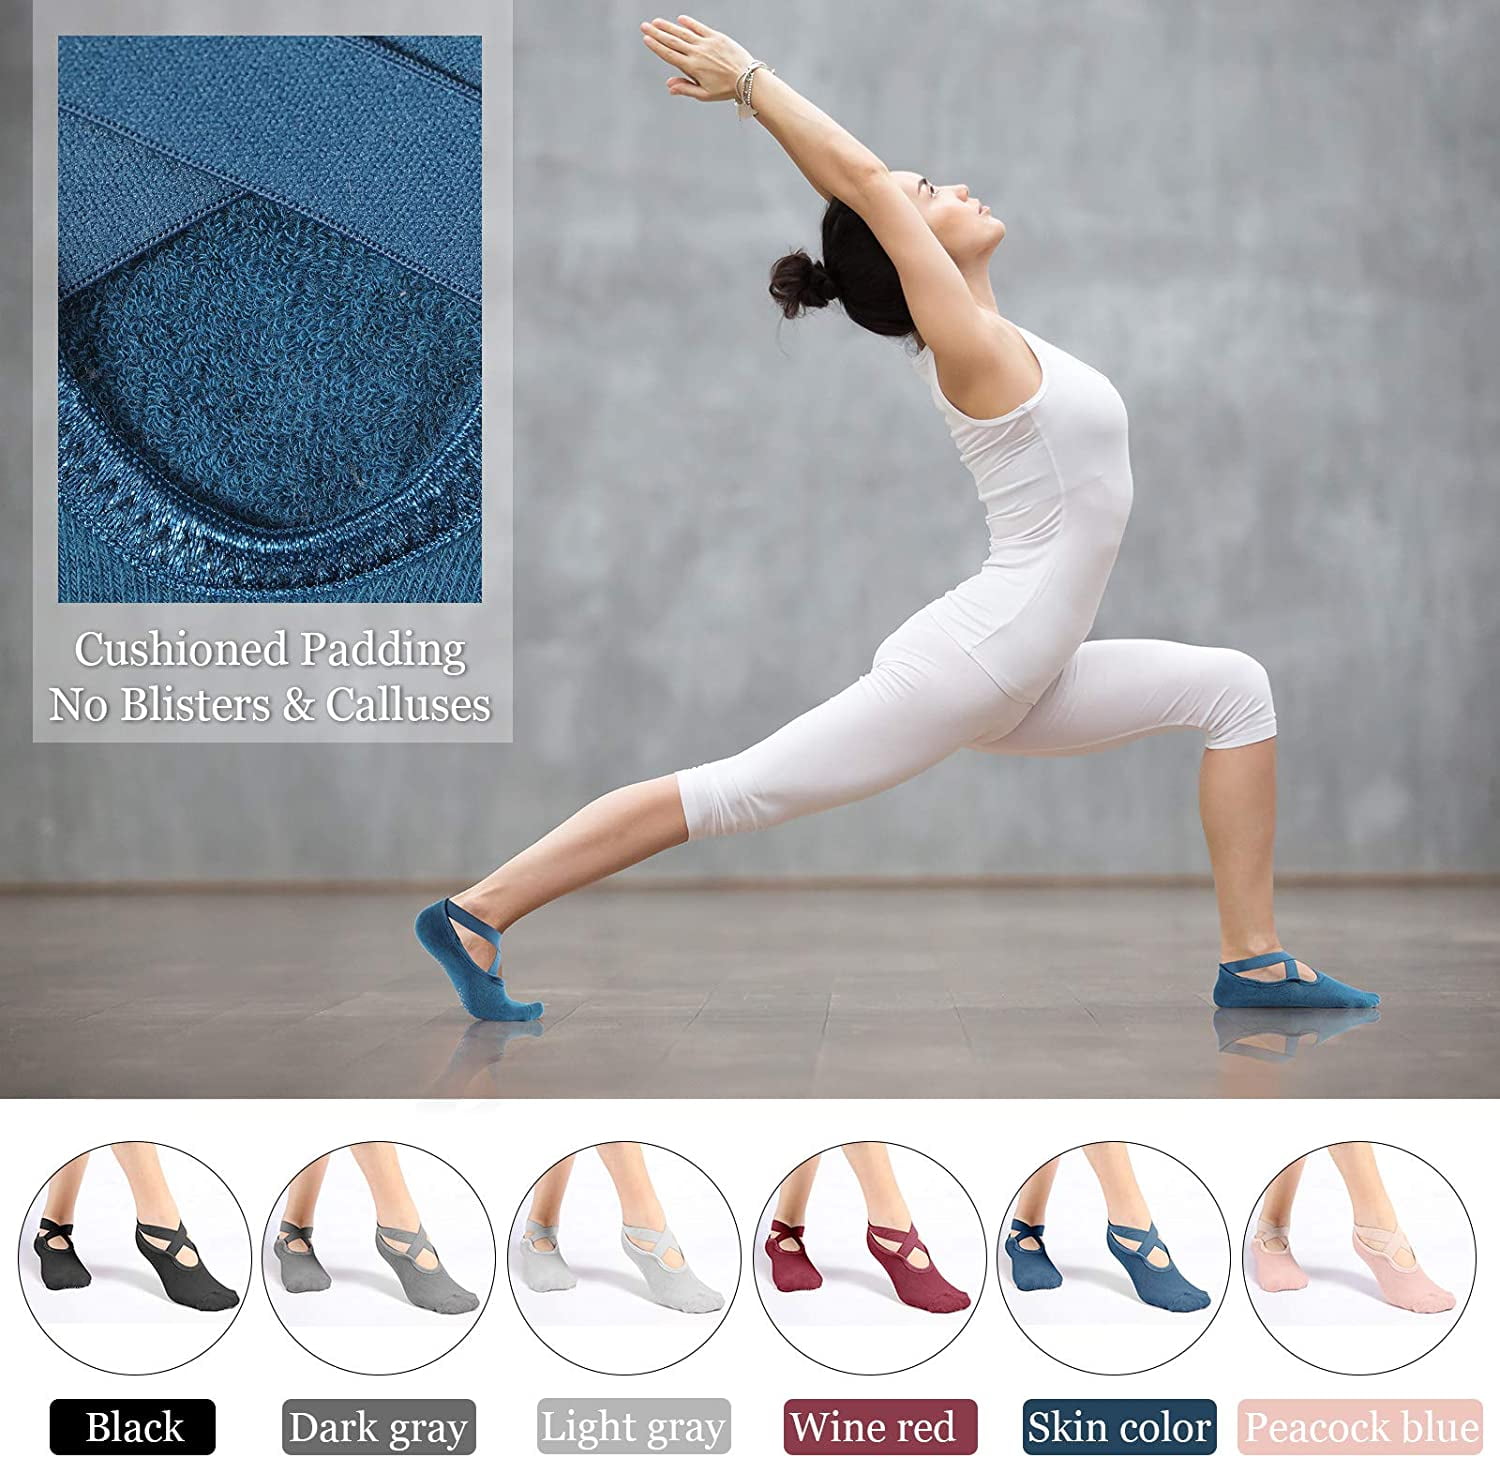 Yoga Gloves for Pilates, Ballet, Dance, - China Barre Socks and Yoga Socks  Non Slip Women price